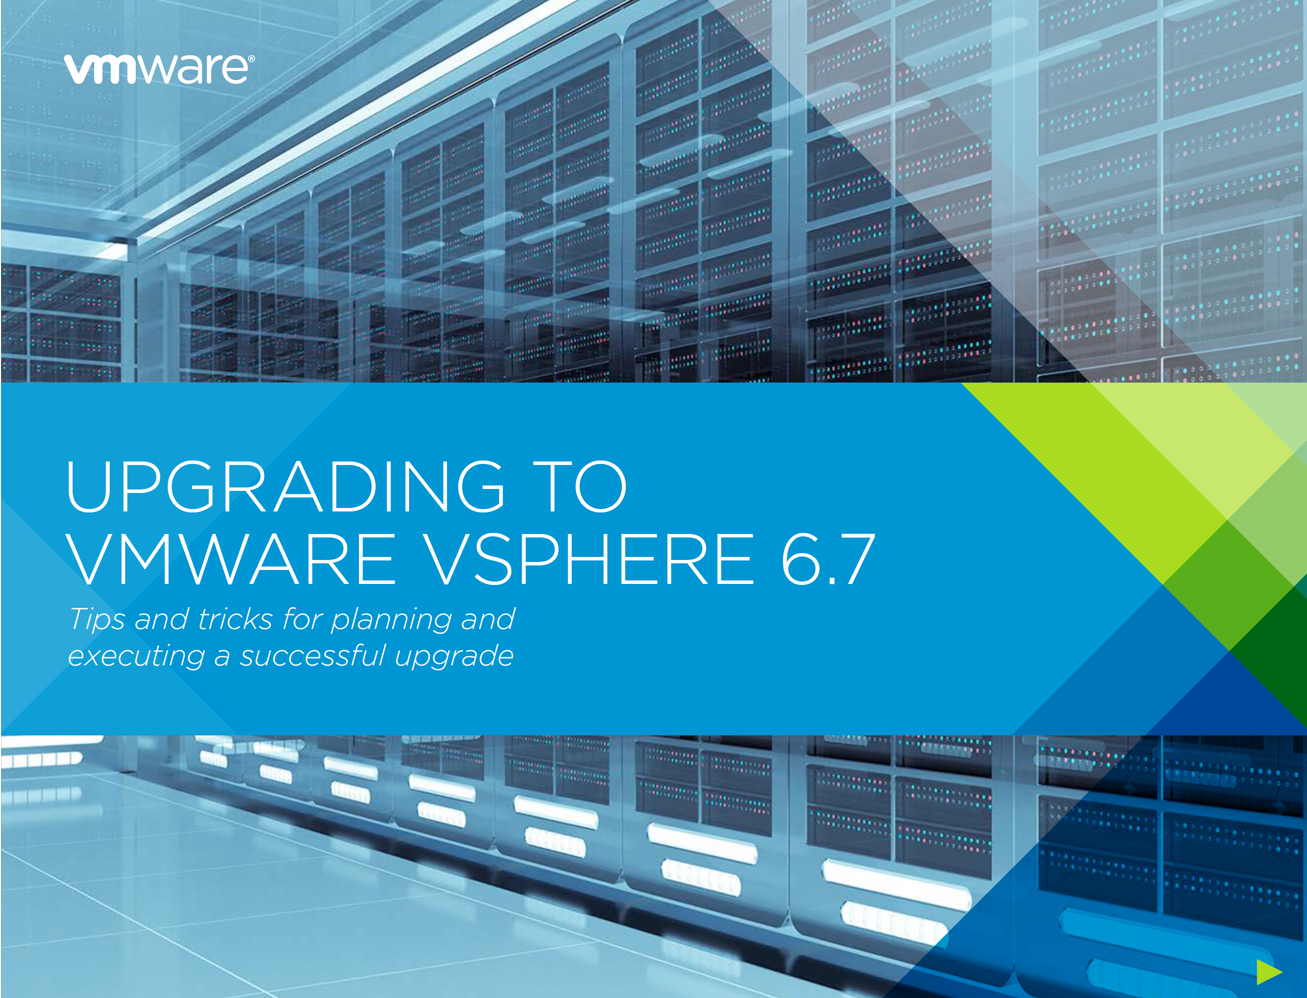 Upgrading to VMware vSphere 6.7